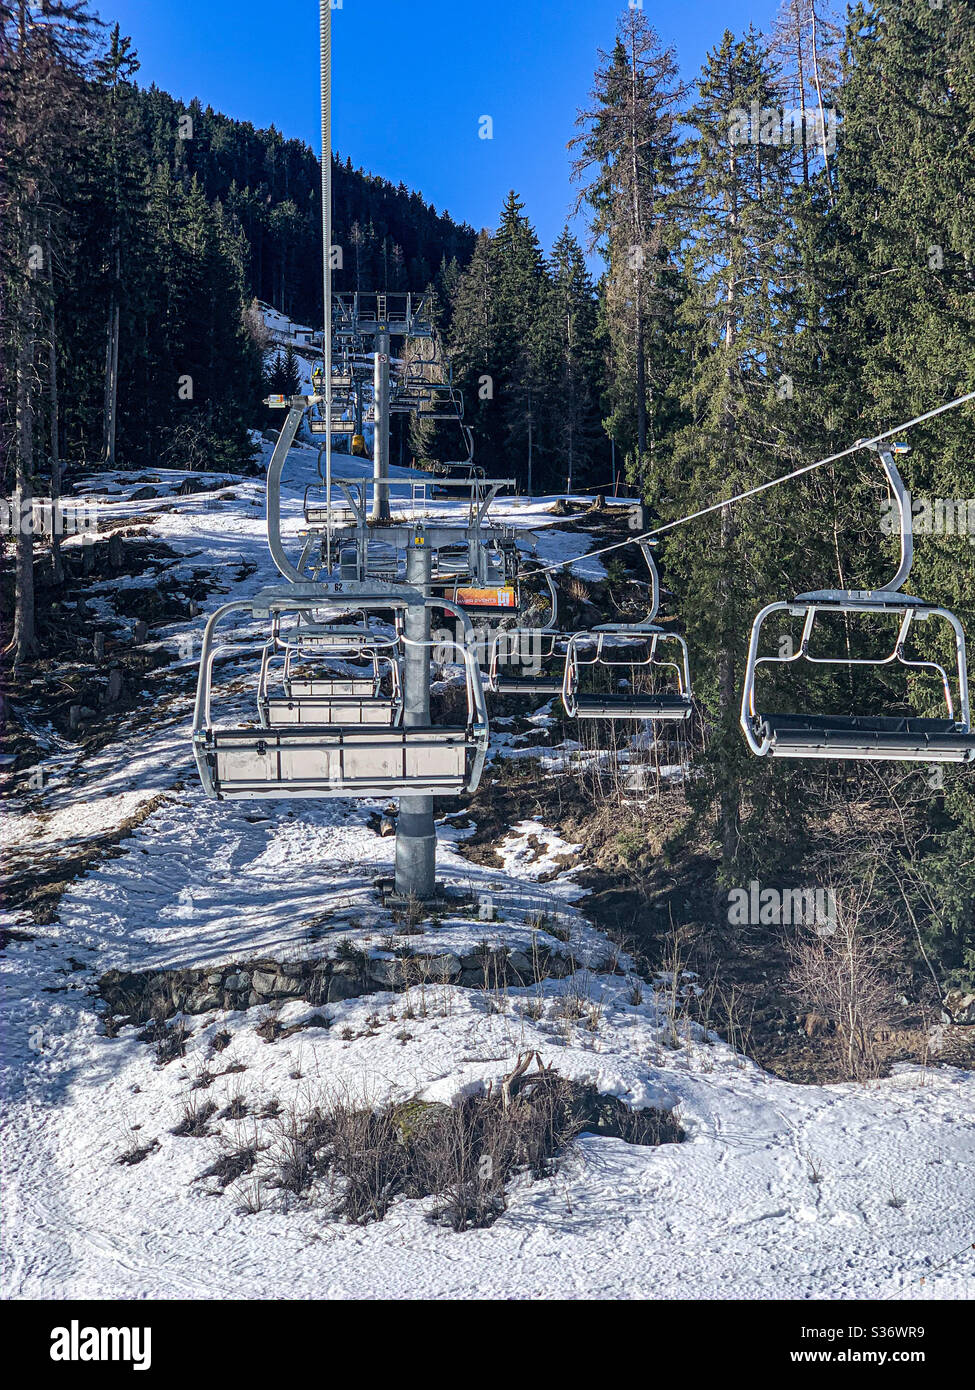 An empty ski lift on the mountain in La Thuile, Italy during ski season. Stock Photo